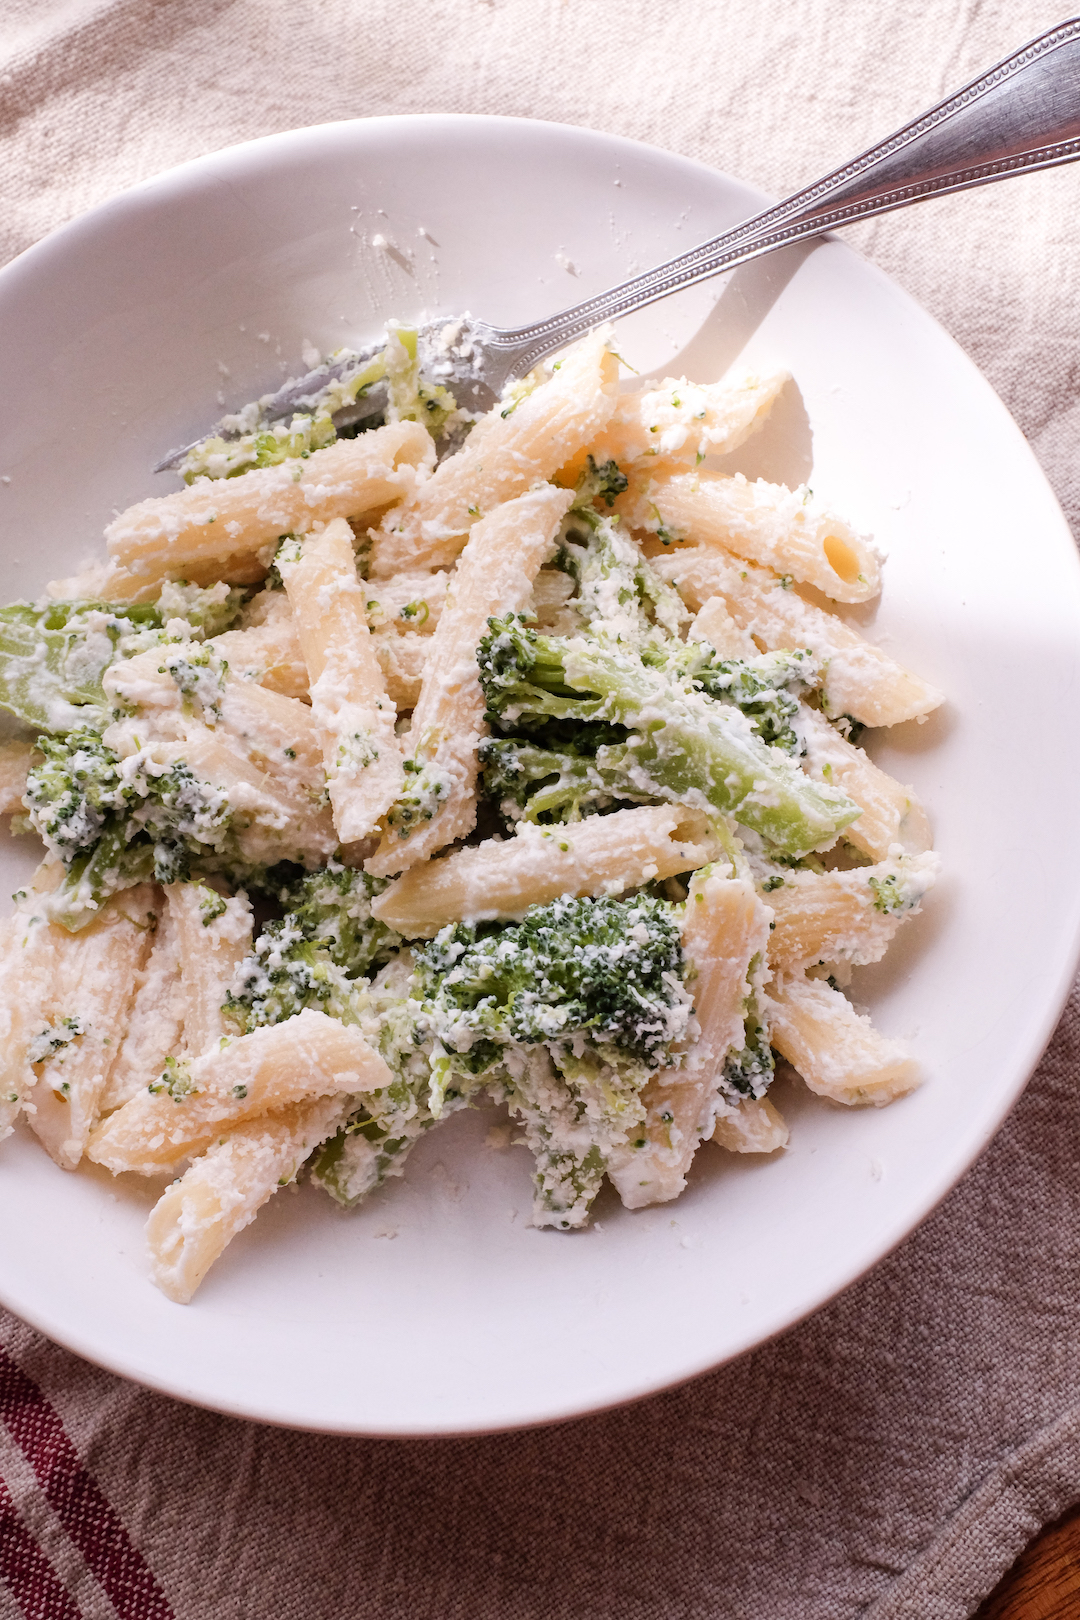 Broccoli ricotta pasta portrait close up